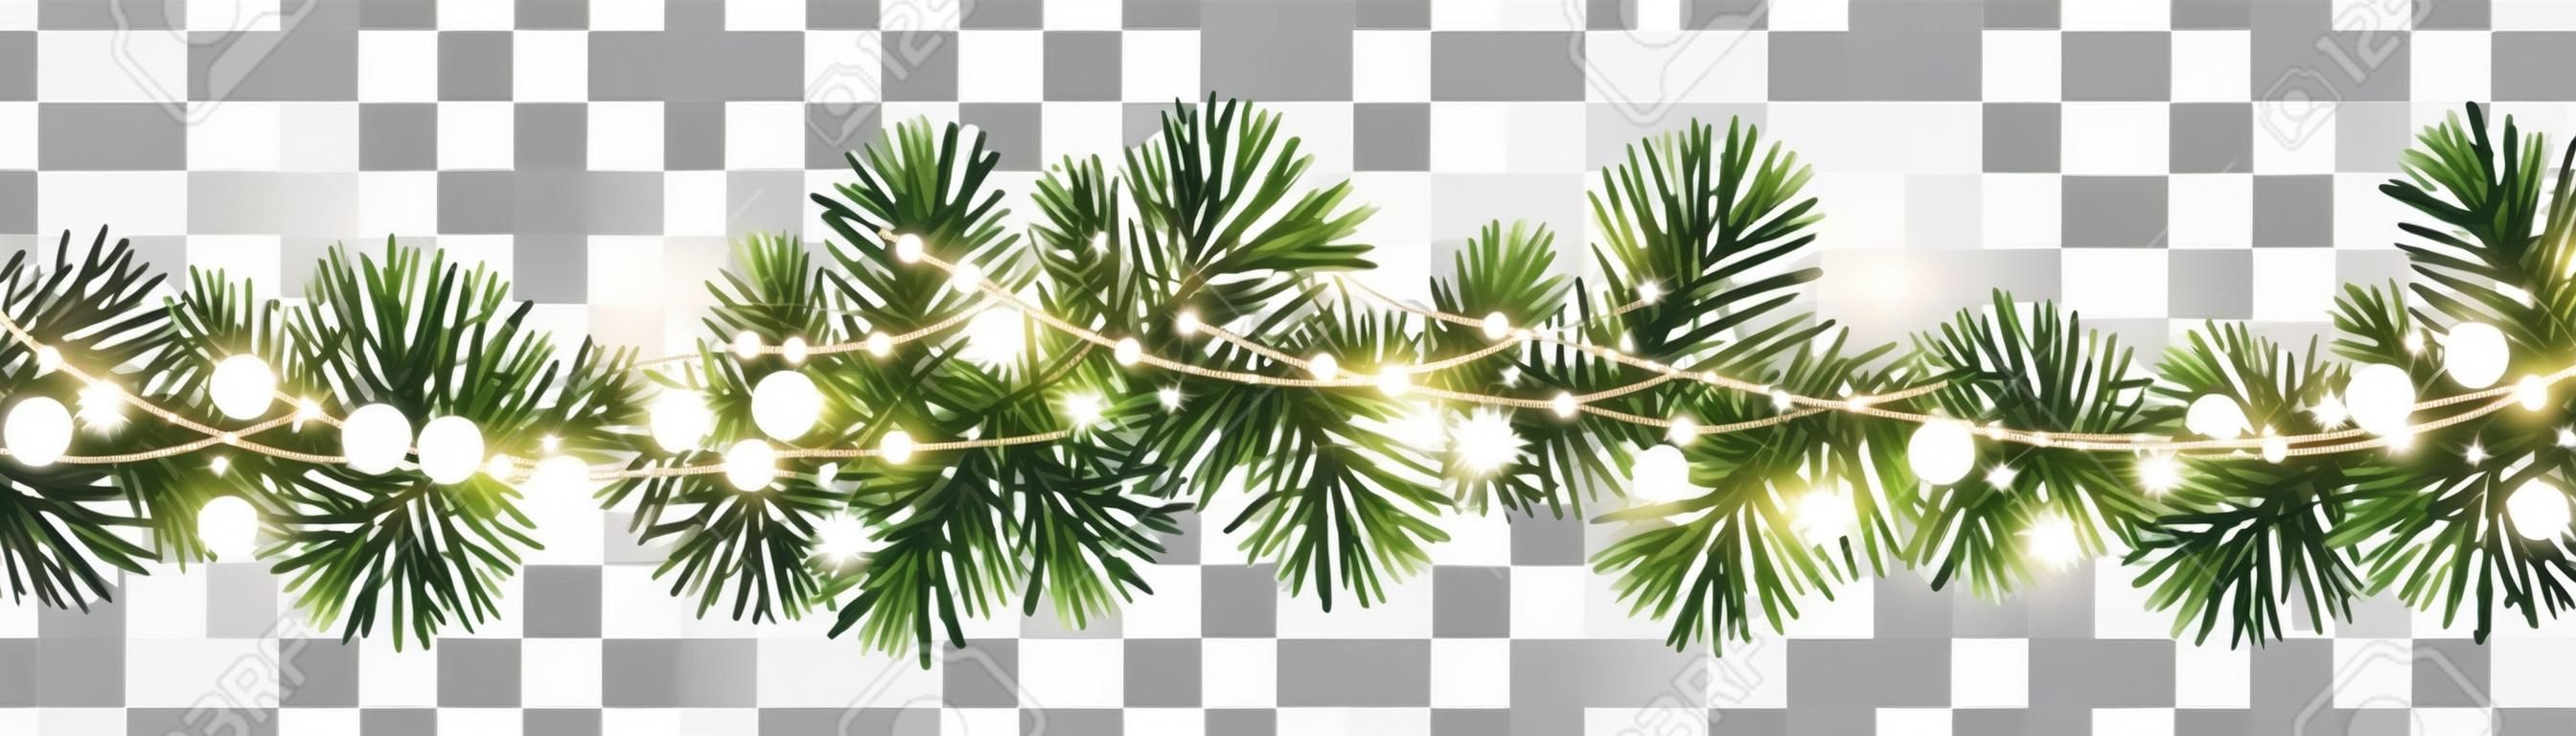 Guirlanda de Natal decorativa sem emenda do vetor com ramos coníferas e corrente de luz brilhante no fundo transparente